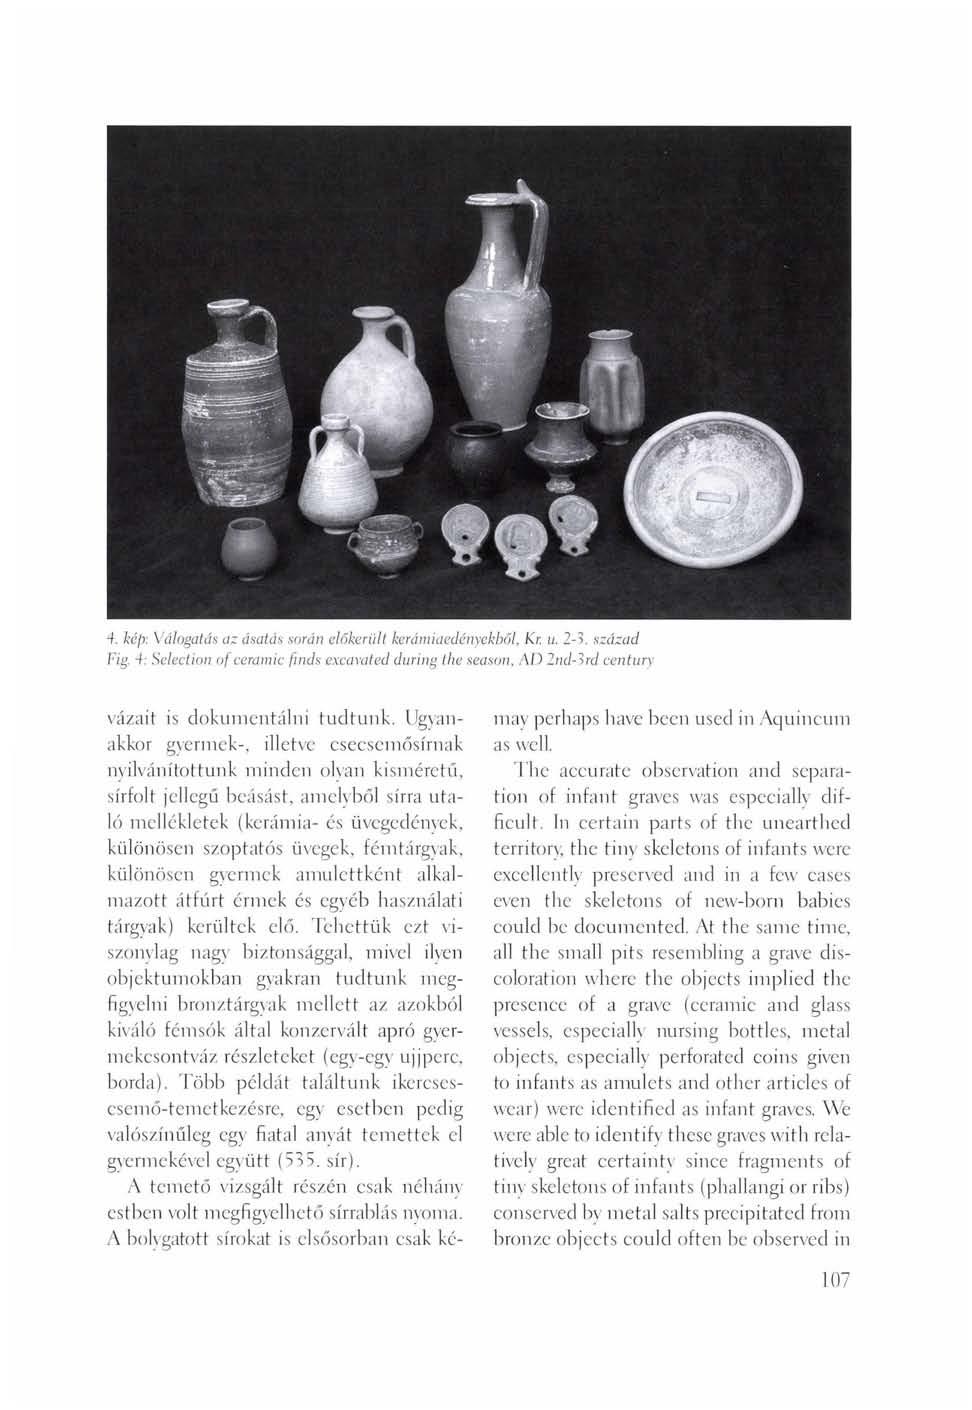 4. kép: Válogatás az ásatás során előkerült kerámiaedényekből, Kr. u. 2-3. század Fig. 4: Selection of ceramic finds excavated during the season, AD 2nd-3rd century vázait is dokumentálni tudtunk.